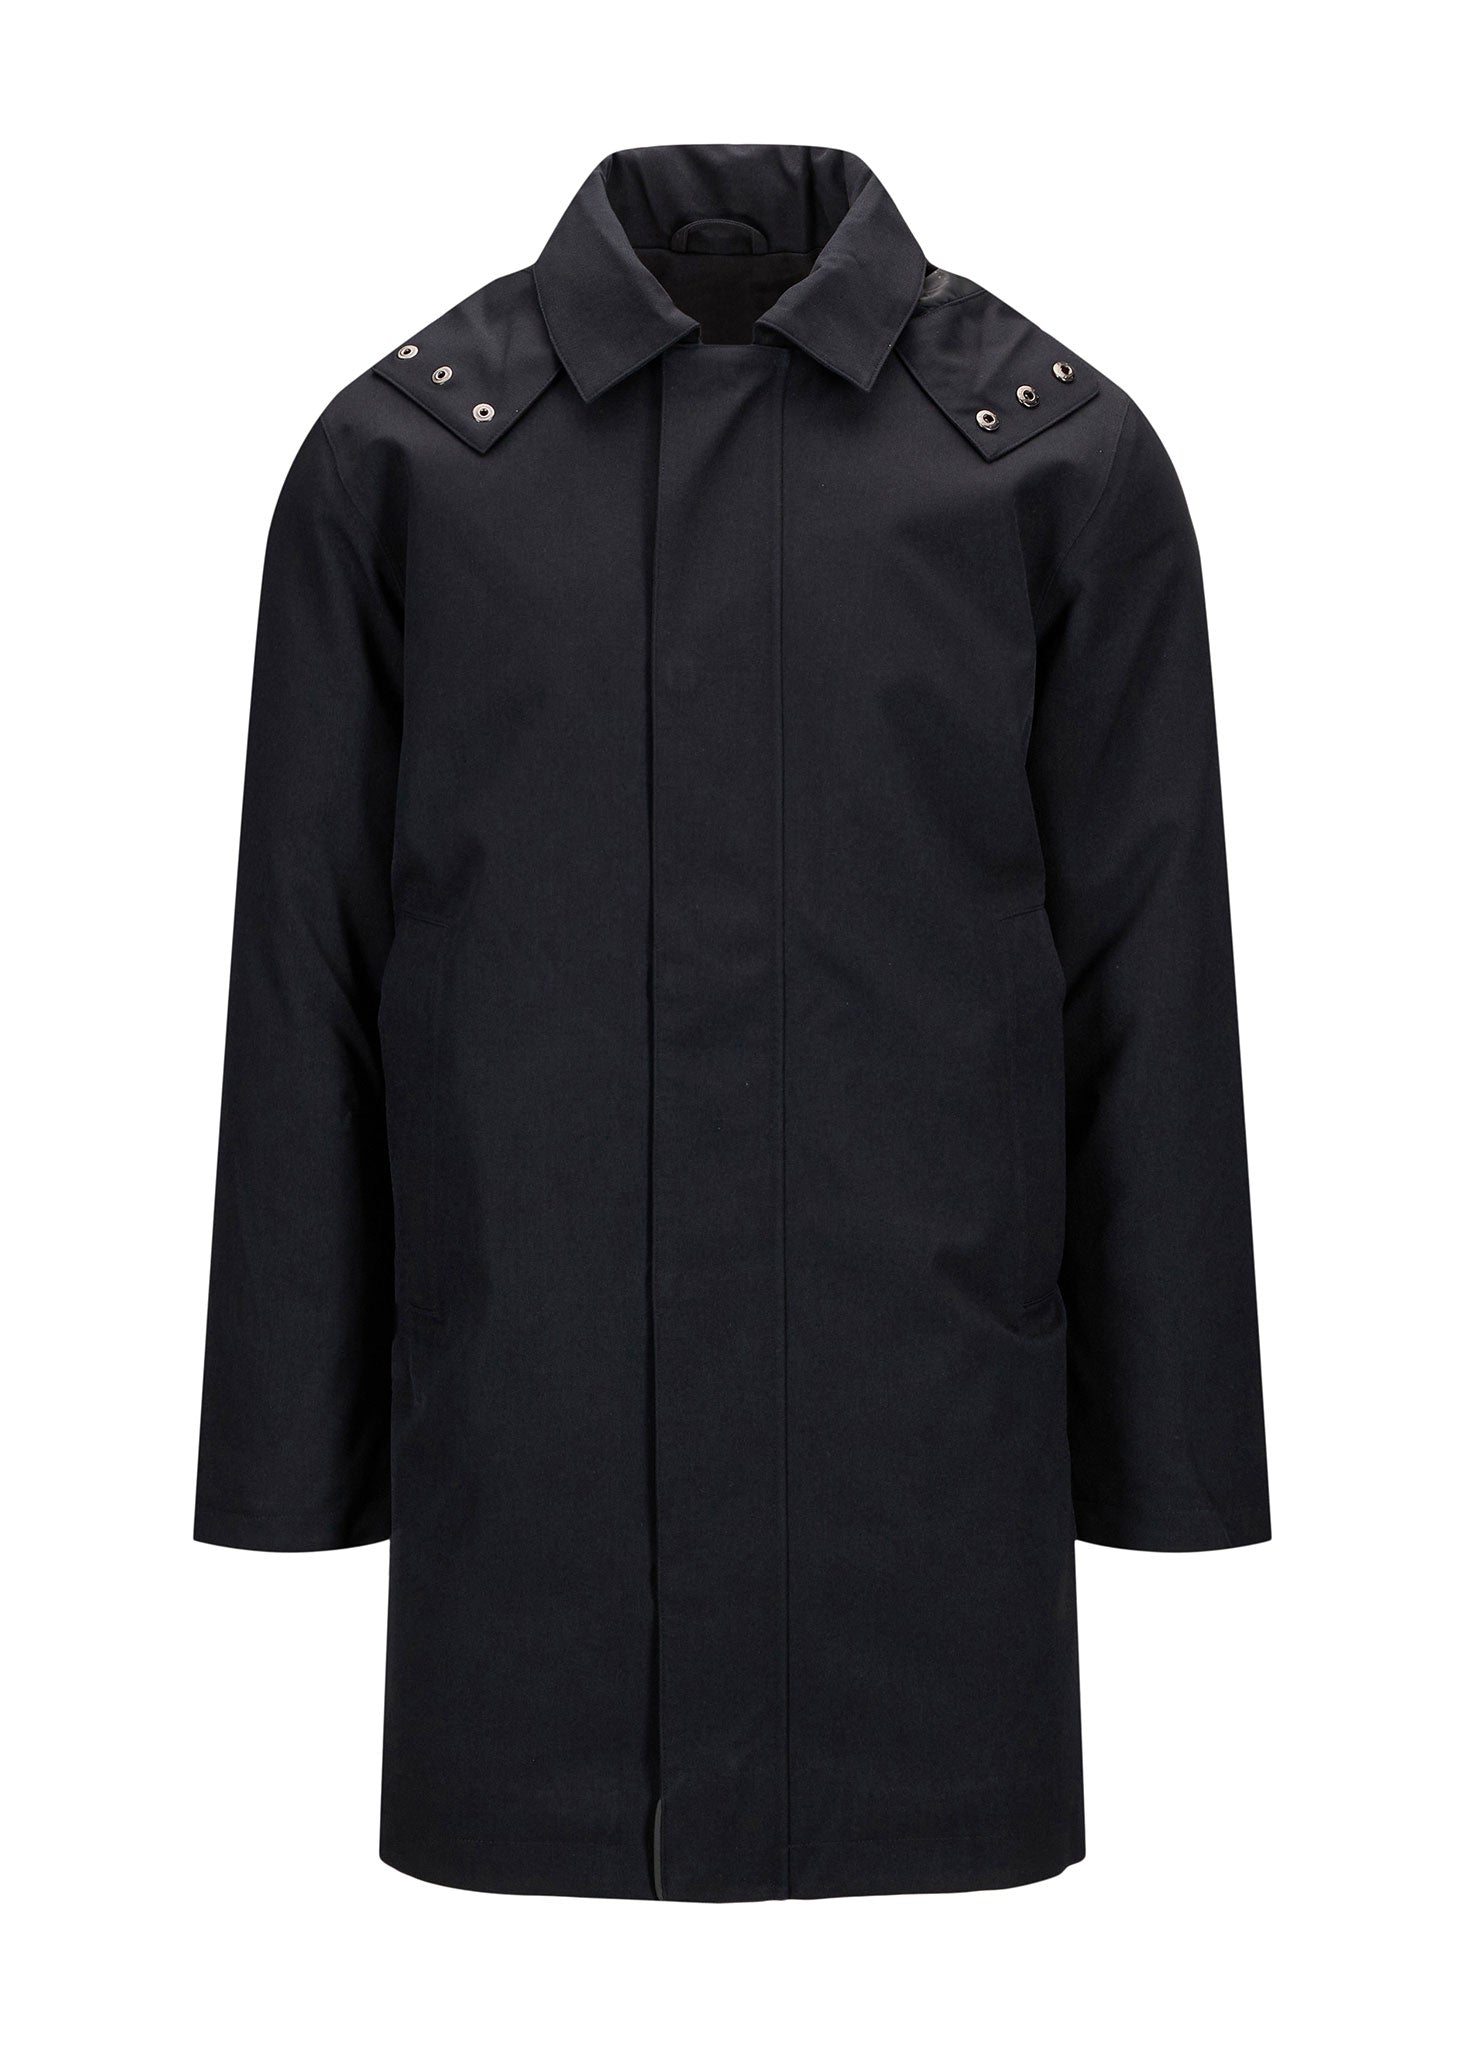 BRGN by Lunde & Gaundal Vestavind Coat Coats 095 New Black